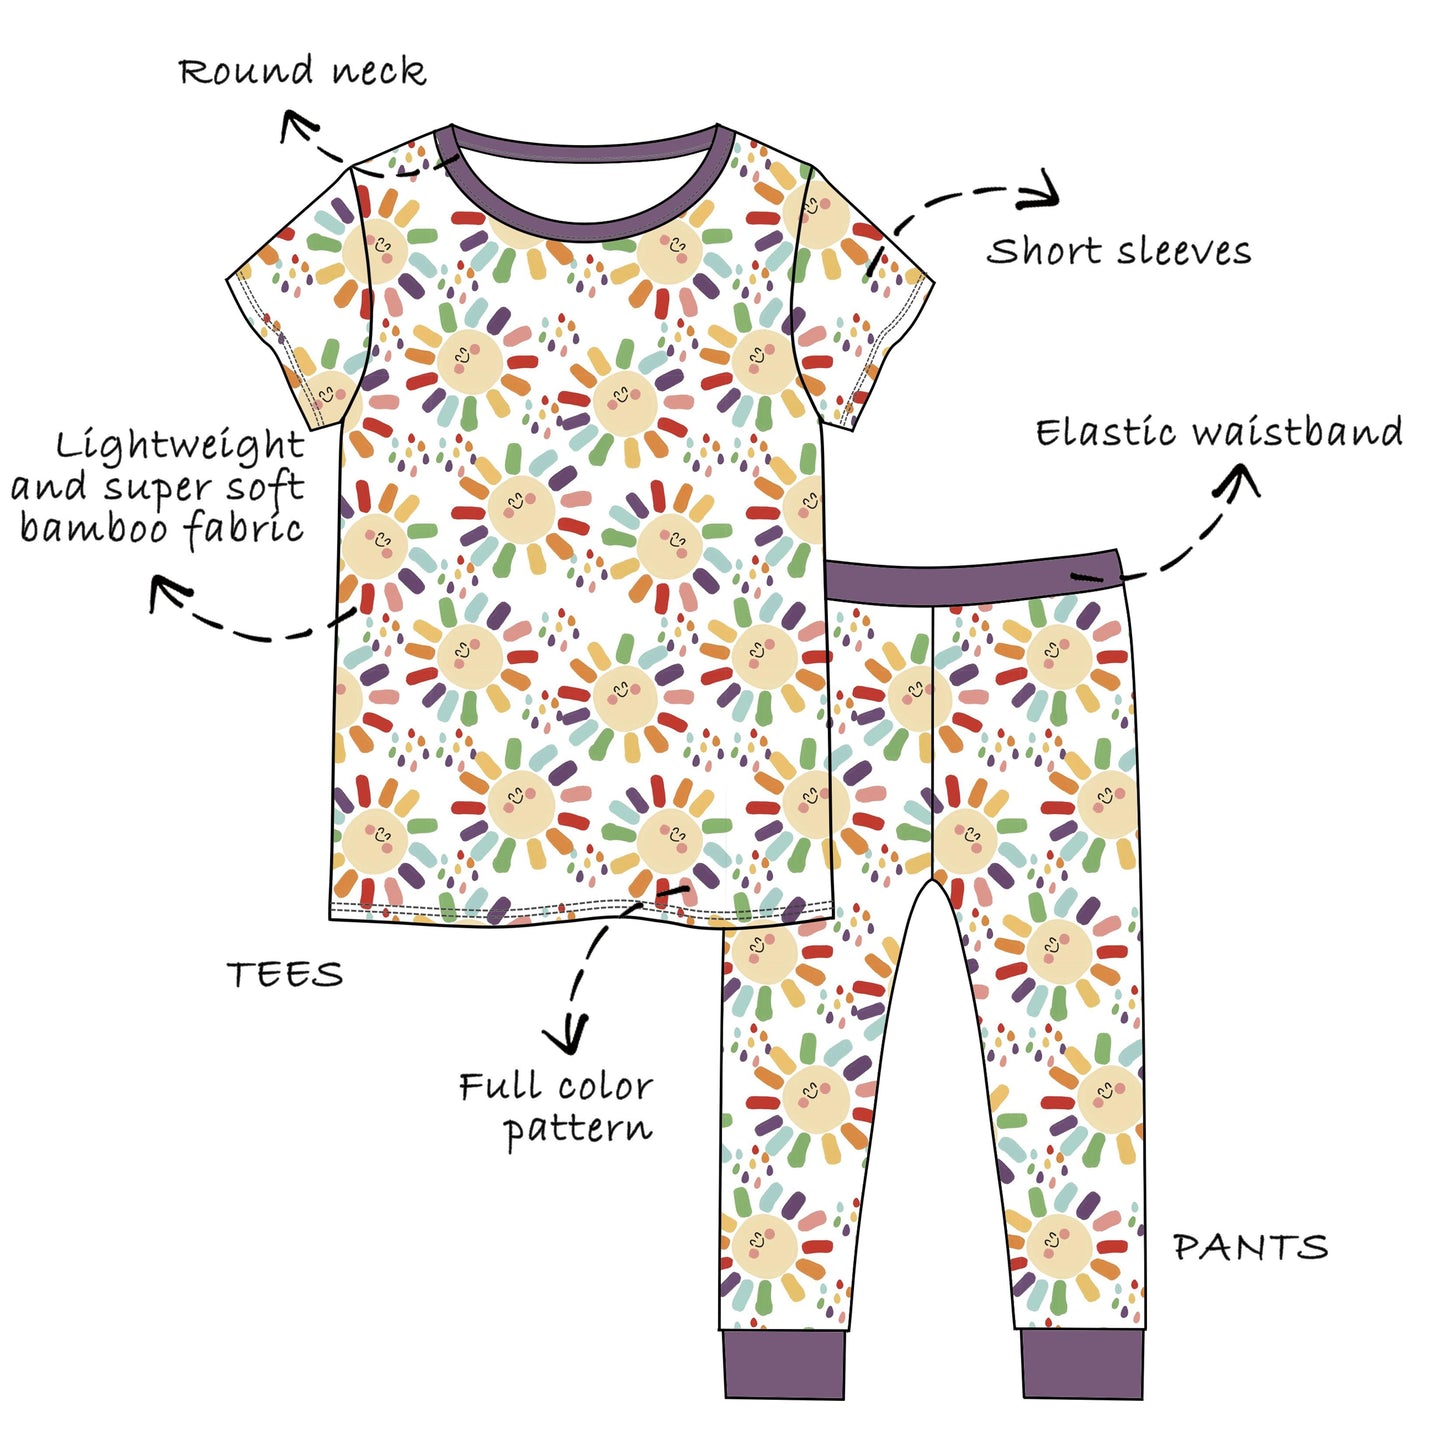 Custom Bamboo Viscose Baby & Toddle & Kids Short 2 piece set-Short Sleeves Tees+Pants